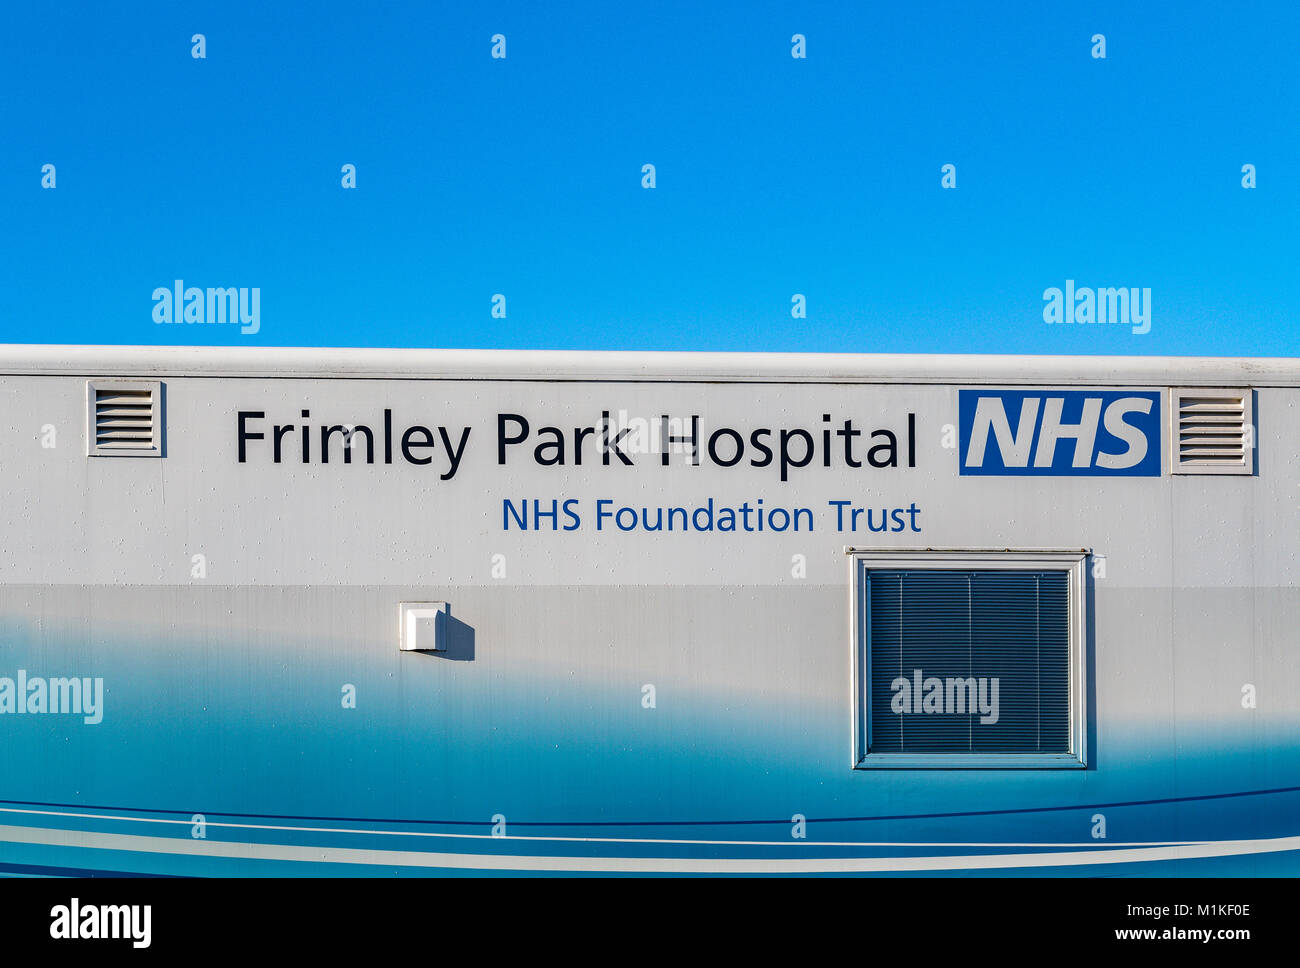 Frimley Park Hospital NHS Foundation Trust móvil Unidad Macular aparcado en el parking de un supermercado que ofrece una parada del tratamiento para la afección ocular AMD Foto de stock